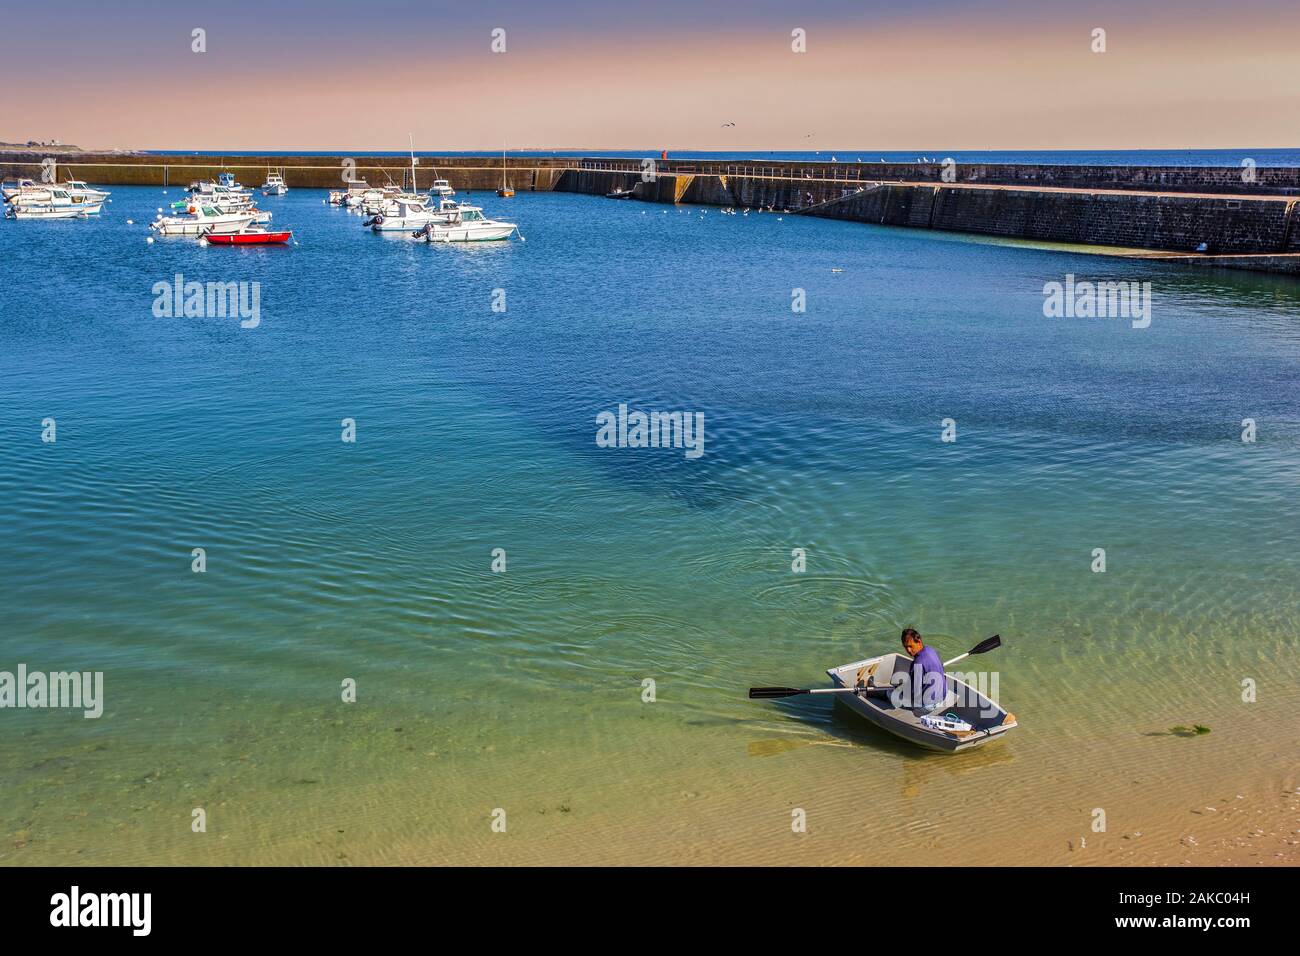 France, Morbihan, côte sauvage, la presqu'île de Quiberon, bateaux de pêche à Port Maria, port de pêche de Quiberon Banque D'Images